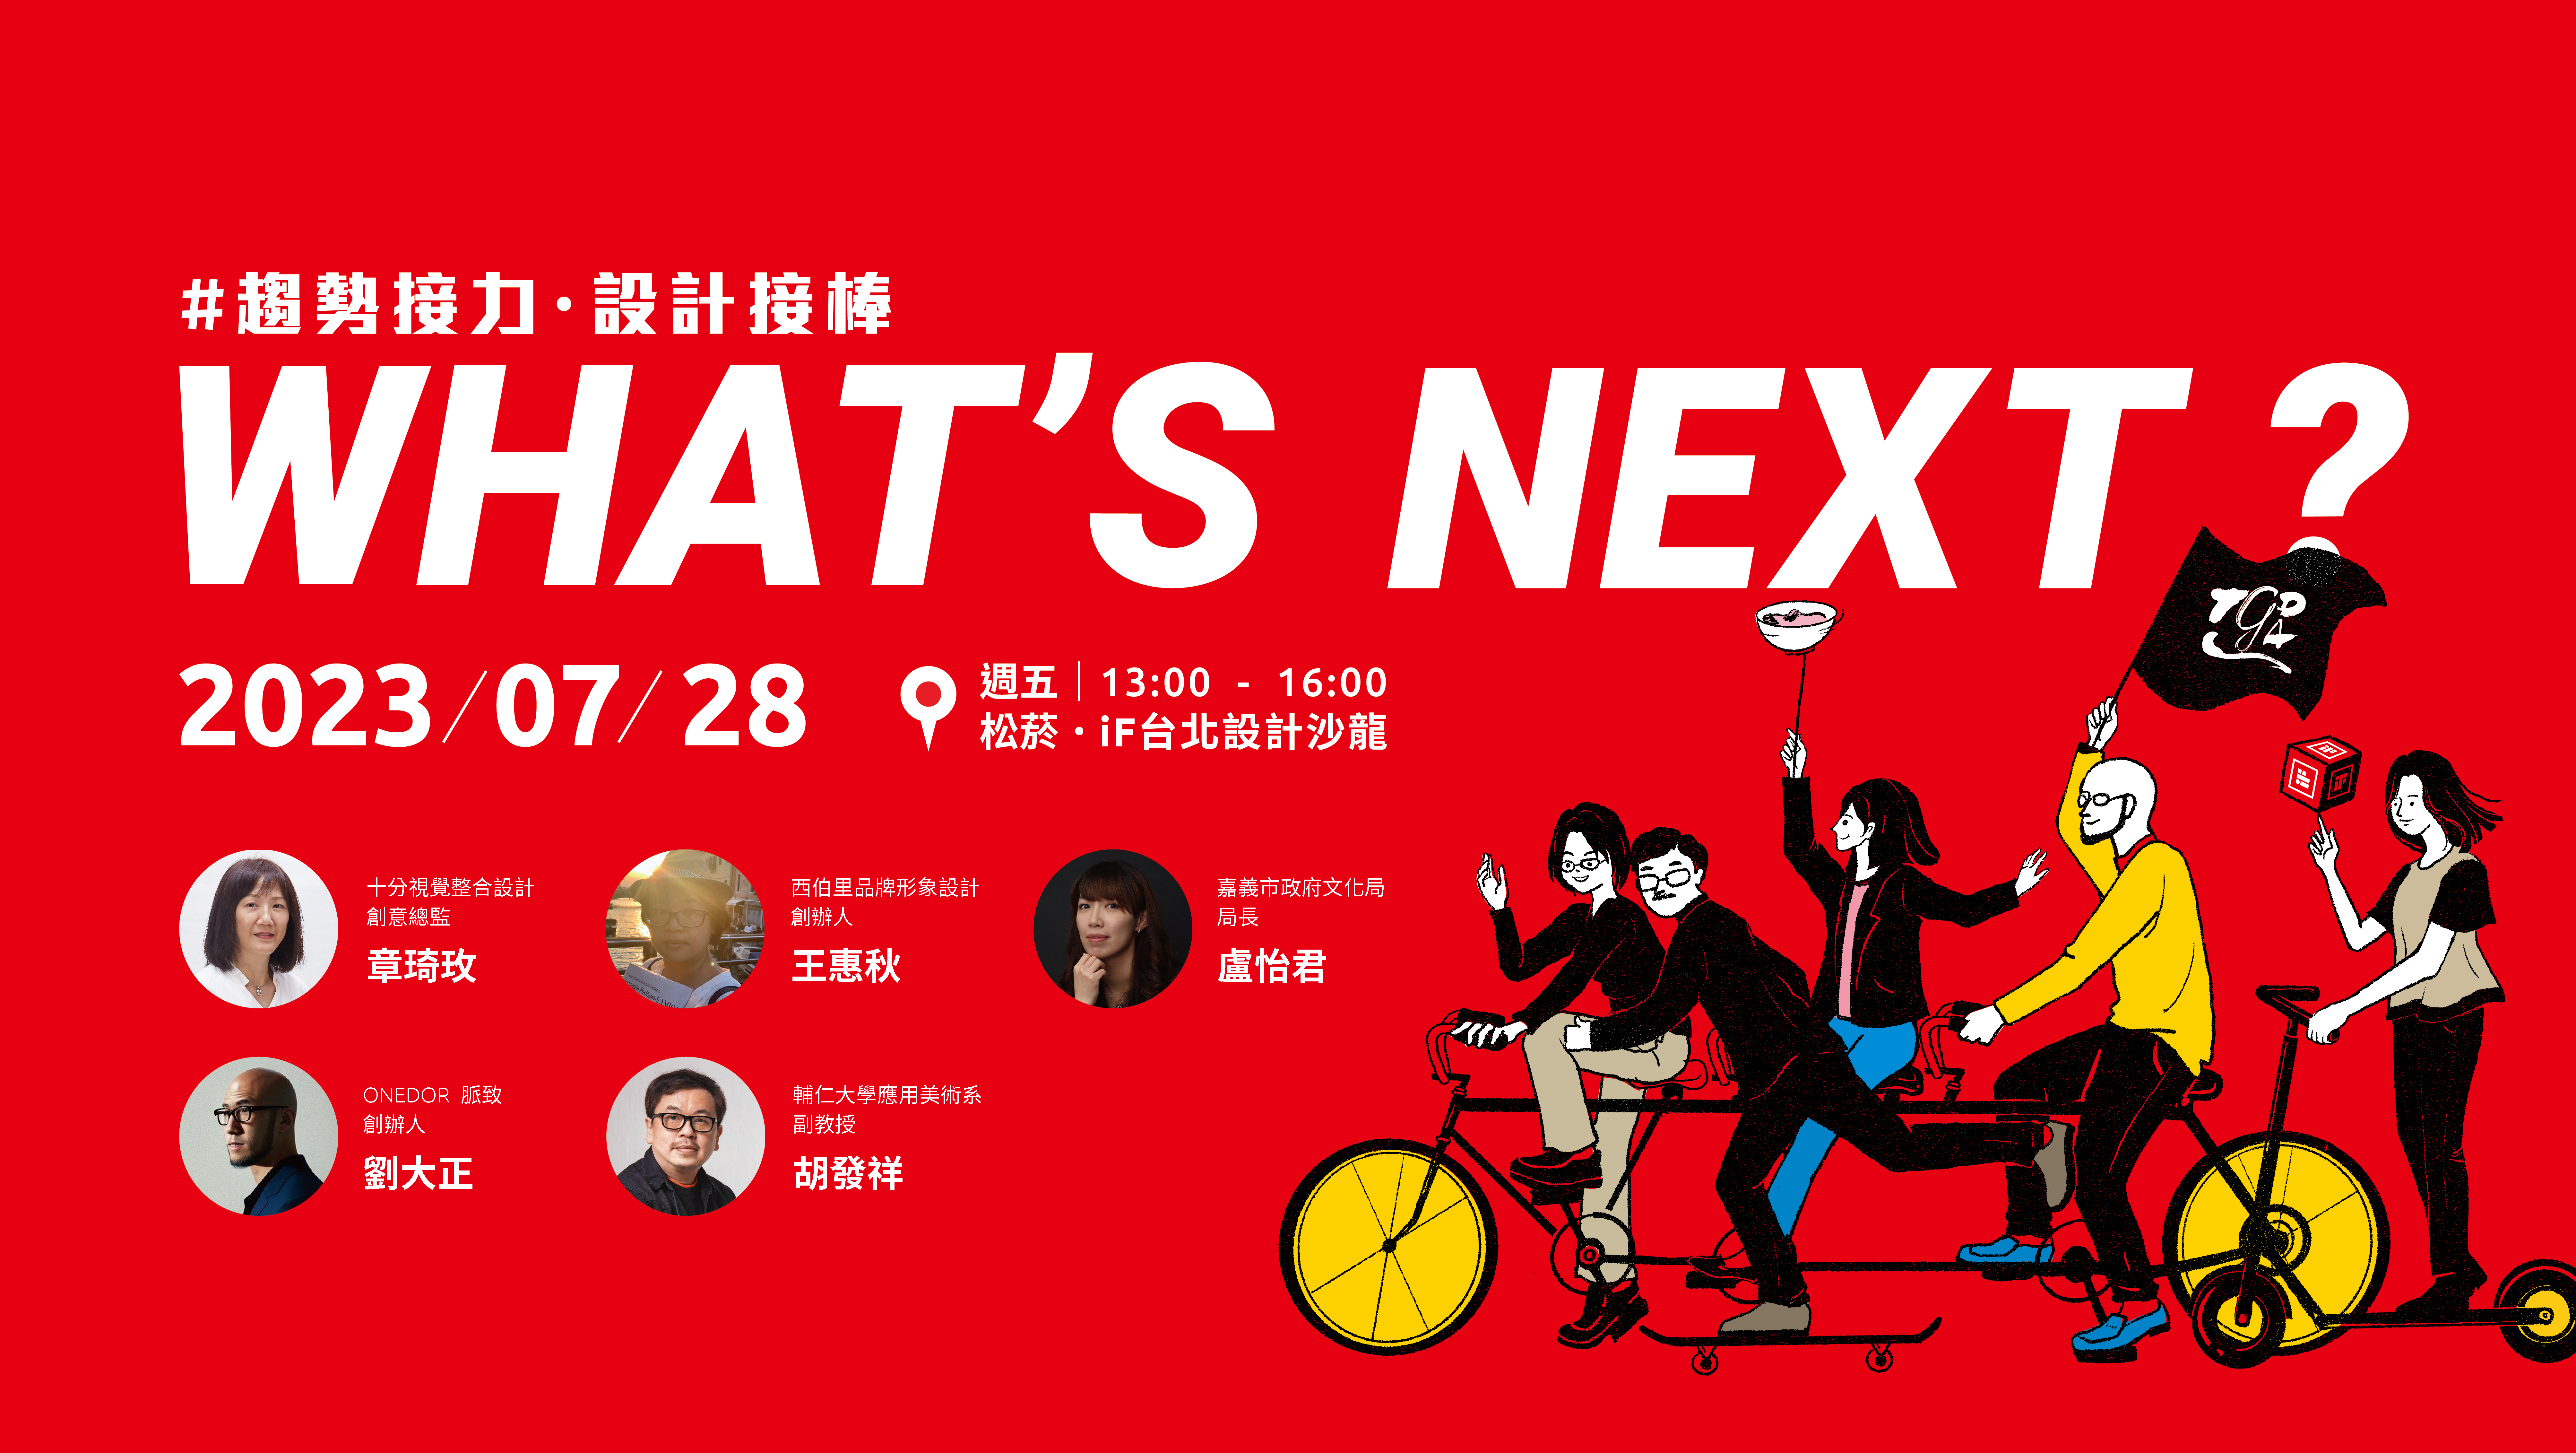 中華平面設計協會 x iF design | WHAT’S NEXT? 趨勢接力. 設計接棒